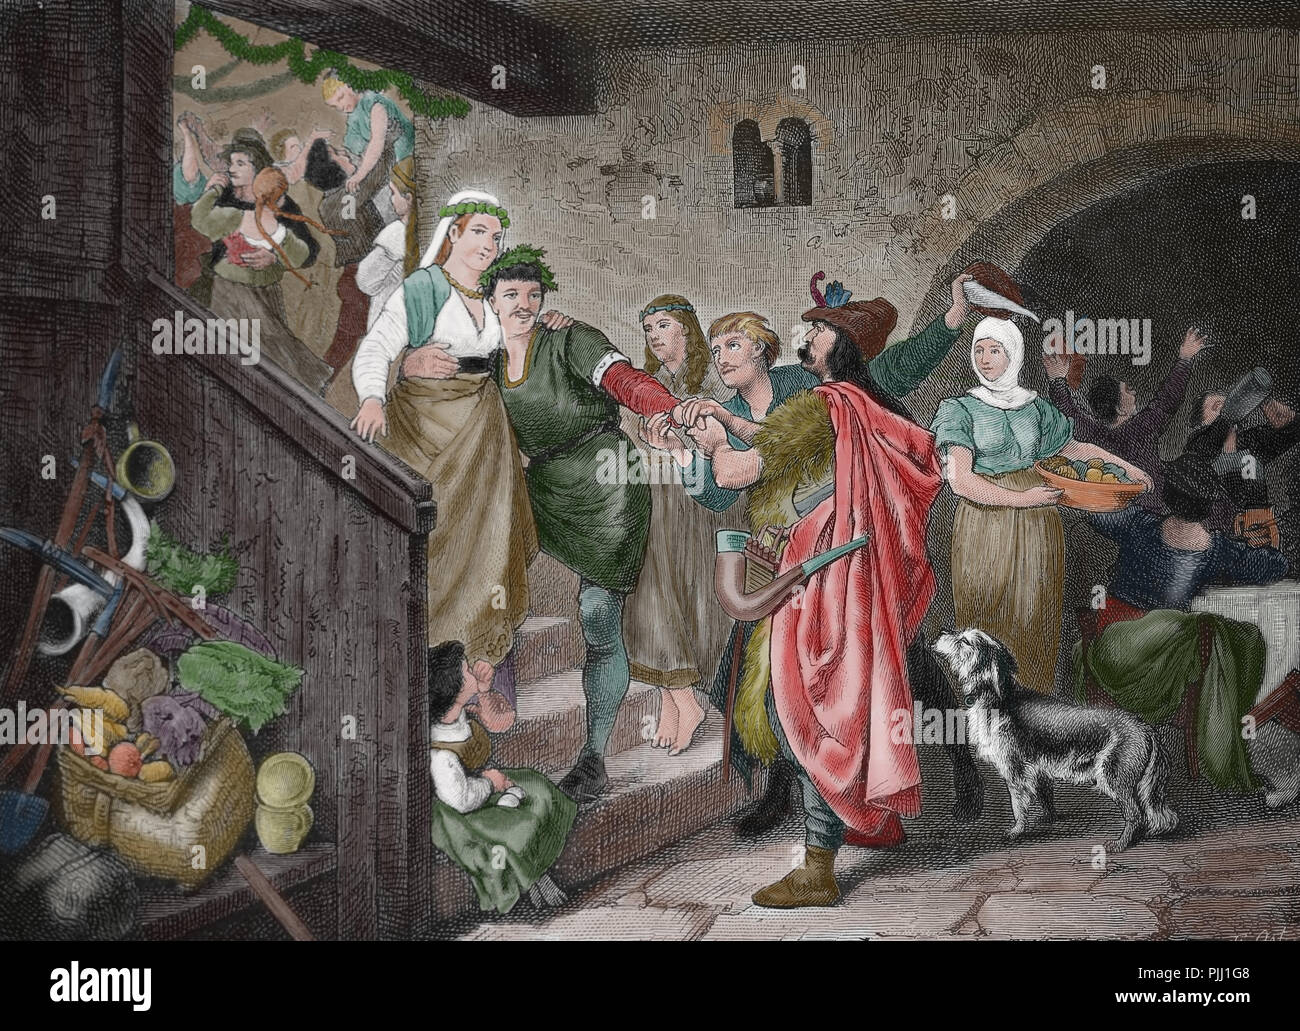 Germania. Medioevo. Festa nuziale degli abitanti del villaggio. Incisione di germanio, 1882. Foto Stock